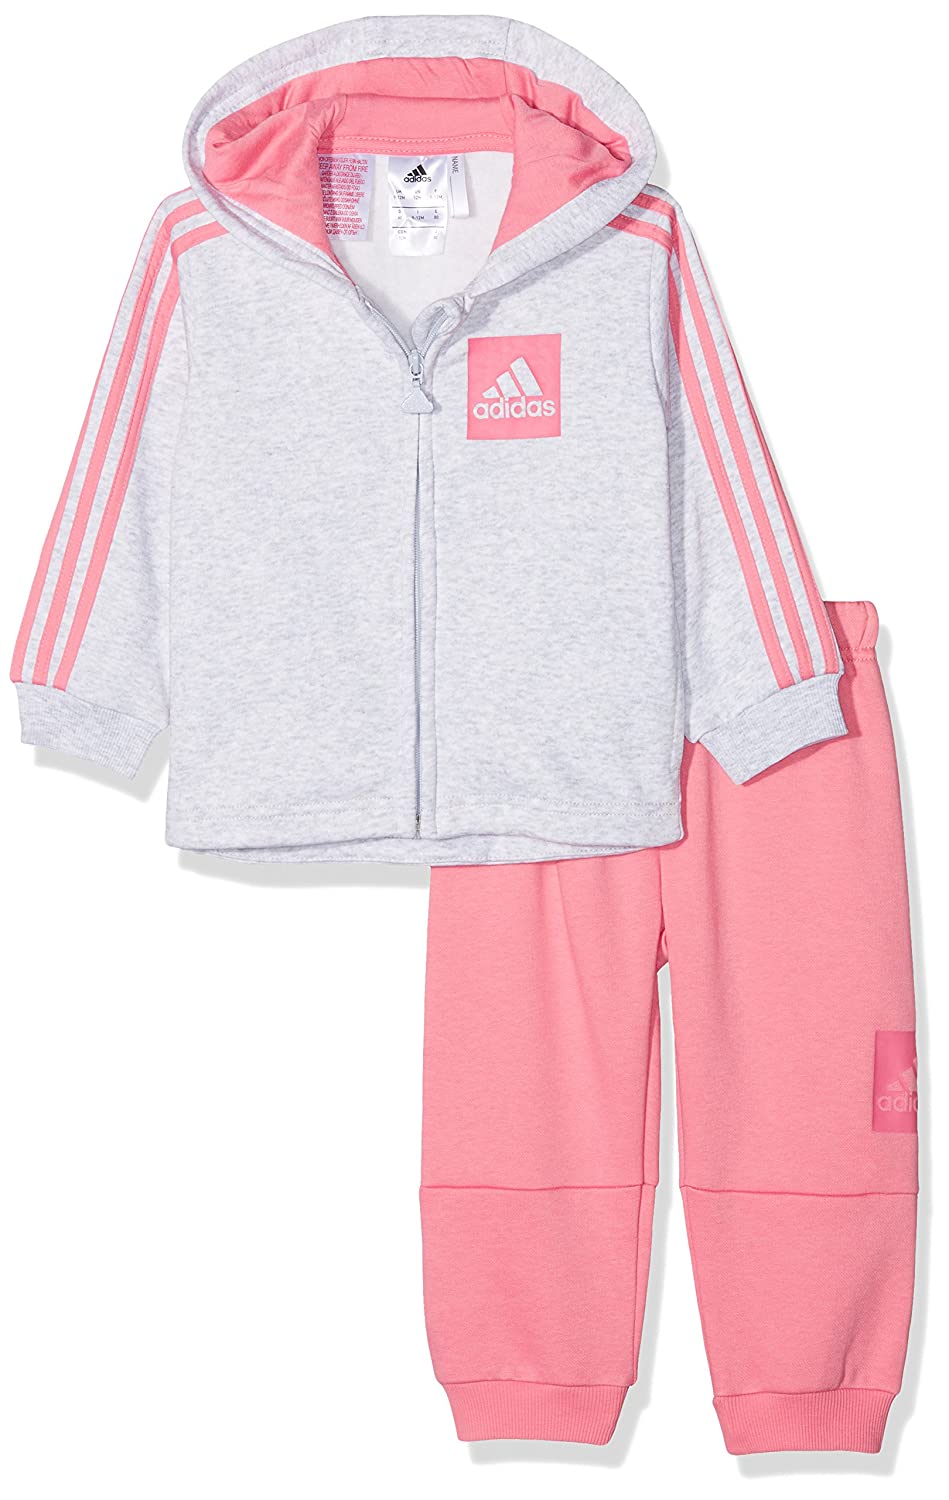 Adidas Trainingsanzug für Babys und Kleinkinder